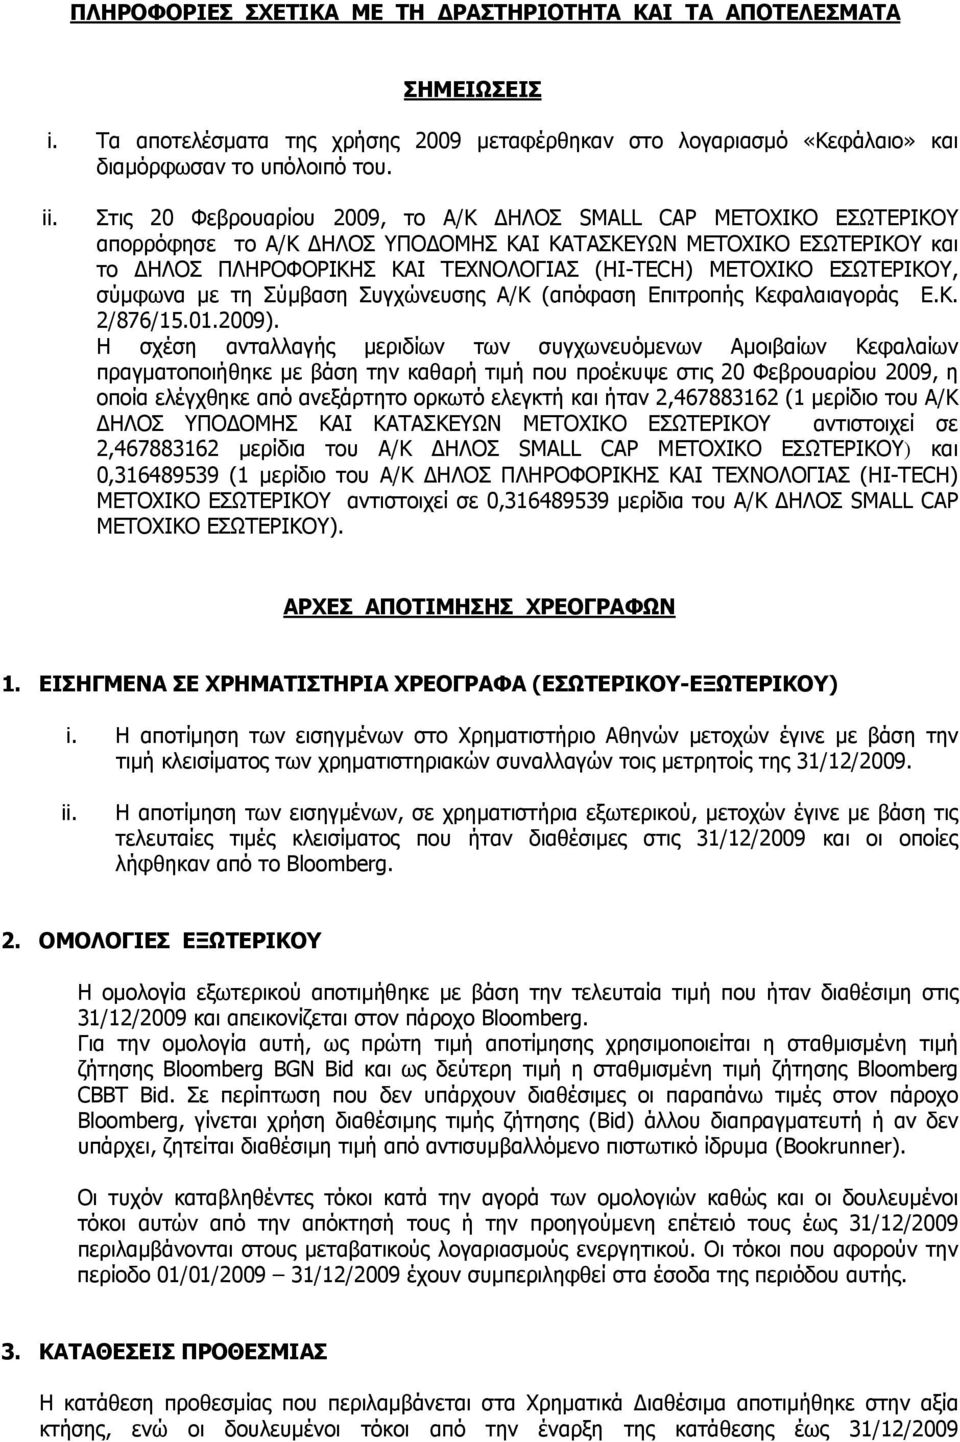 ΕΣΩΤEΡIKOY, σύμφωνα με τη Σύμβαση Συγχώνευσης Α/Κ (απόφαση Επιτροπής Κεφαλαιαγοράς Ε.Κ. 2/876/15.01.2009).